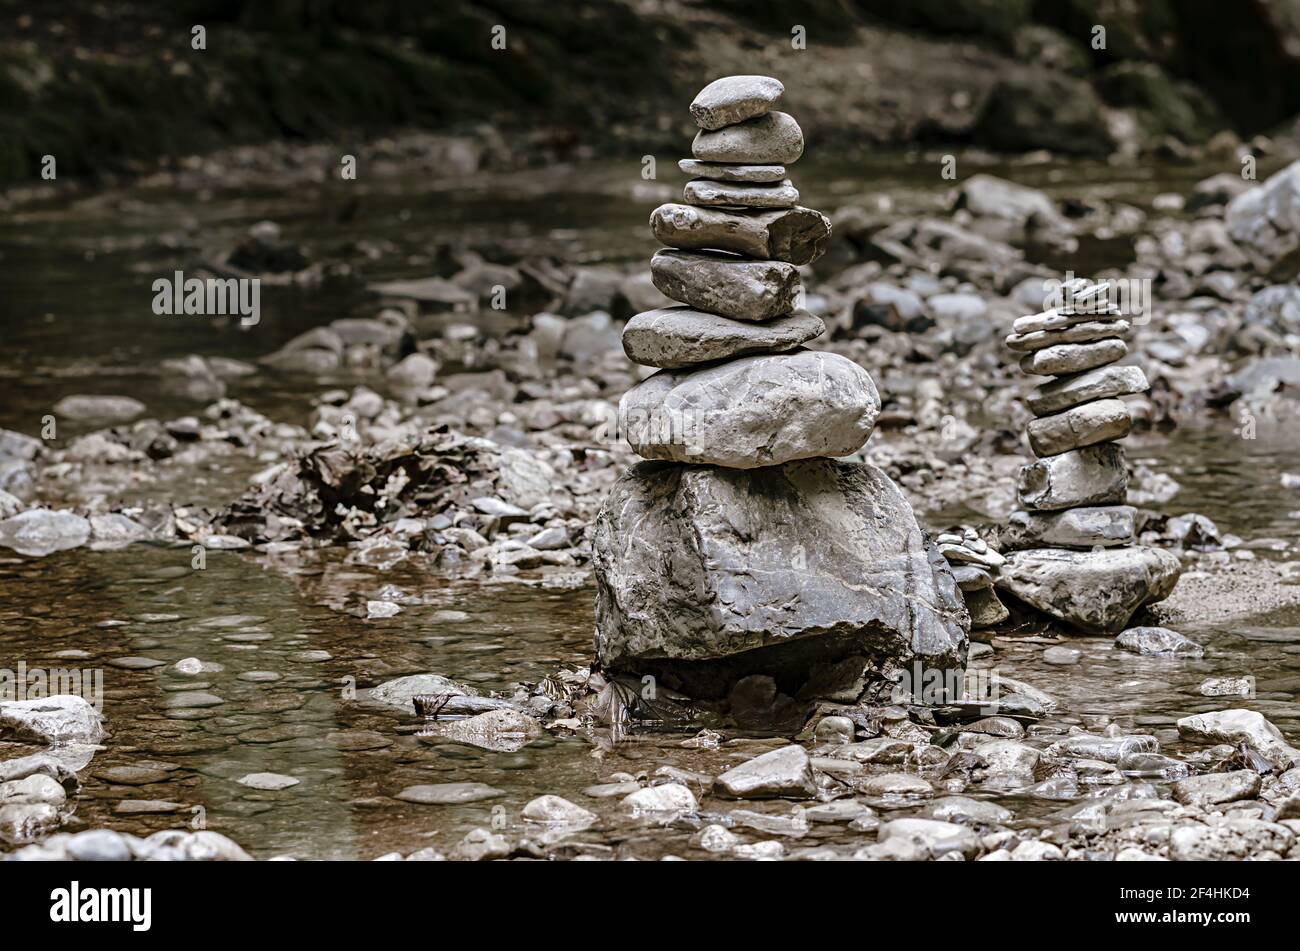 Zwei Stapel von gestapelten Felsen, balanciert in einem Flussbett. Felsen lagen flach aufeinander zu großer Höhe. Balancierte Gesteinshaufen am Bach. Stockfoto